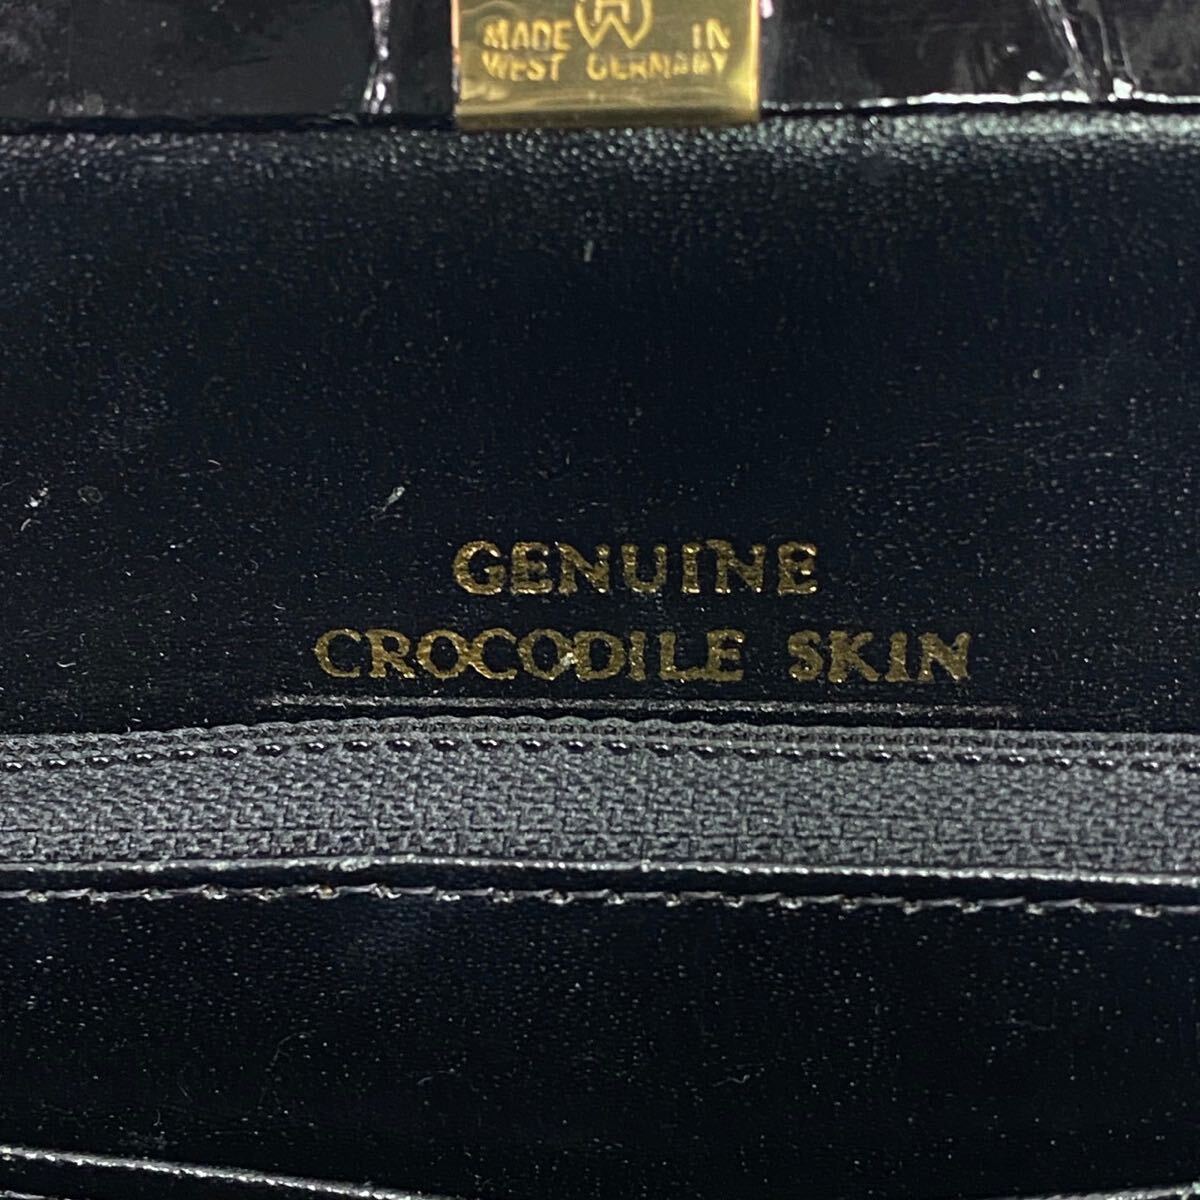  суммировать много экзотический кожа крокодил Ostrich wani кожа черный ko питон и т.п. сумка мелкие вещи No-brand комплект [d1328]